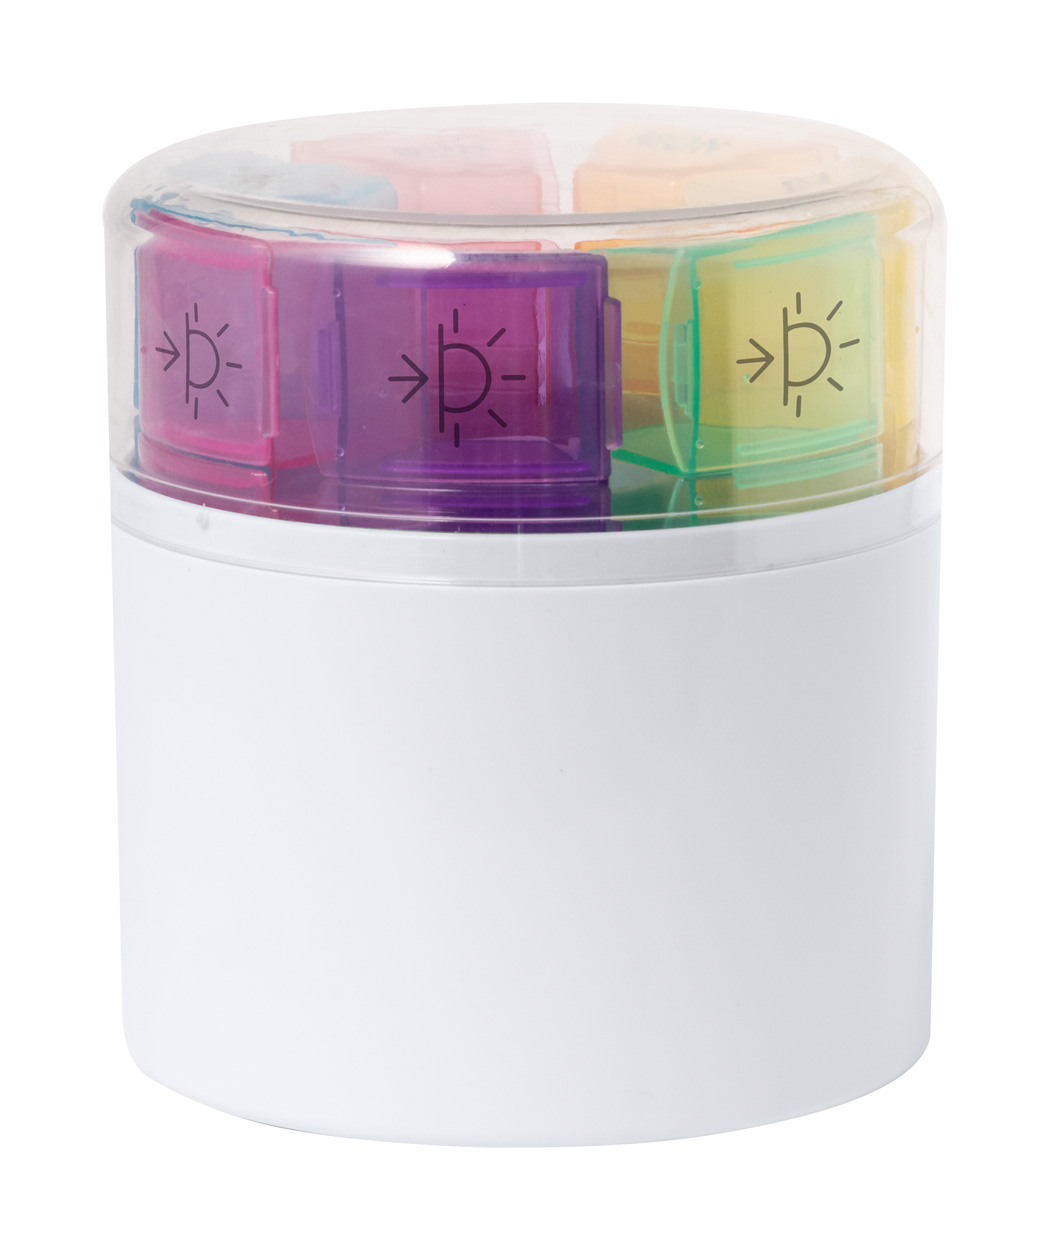 Ablix pill box - multicolor